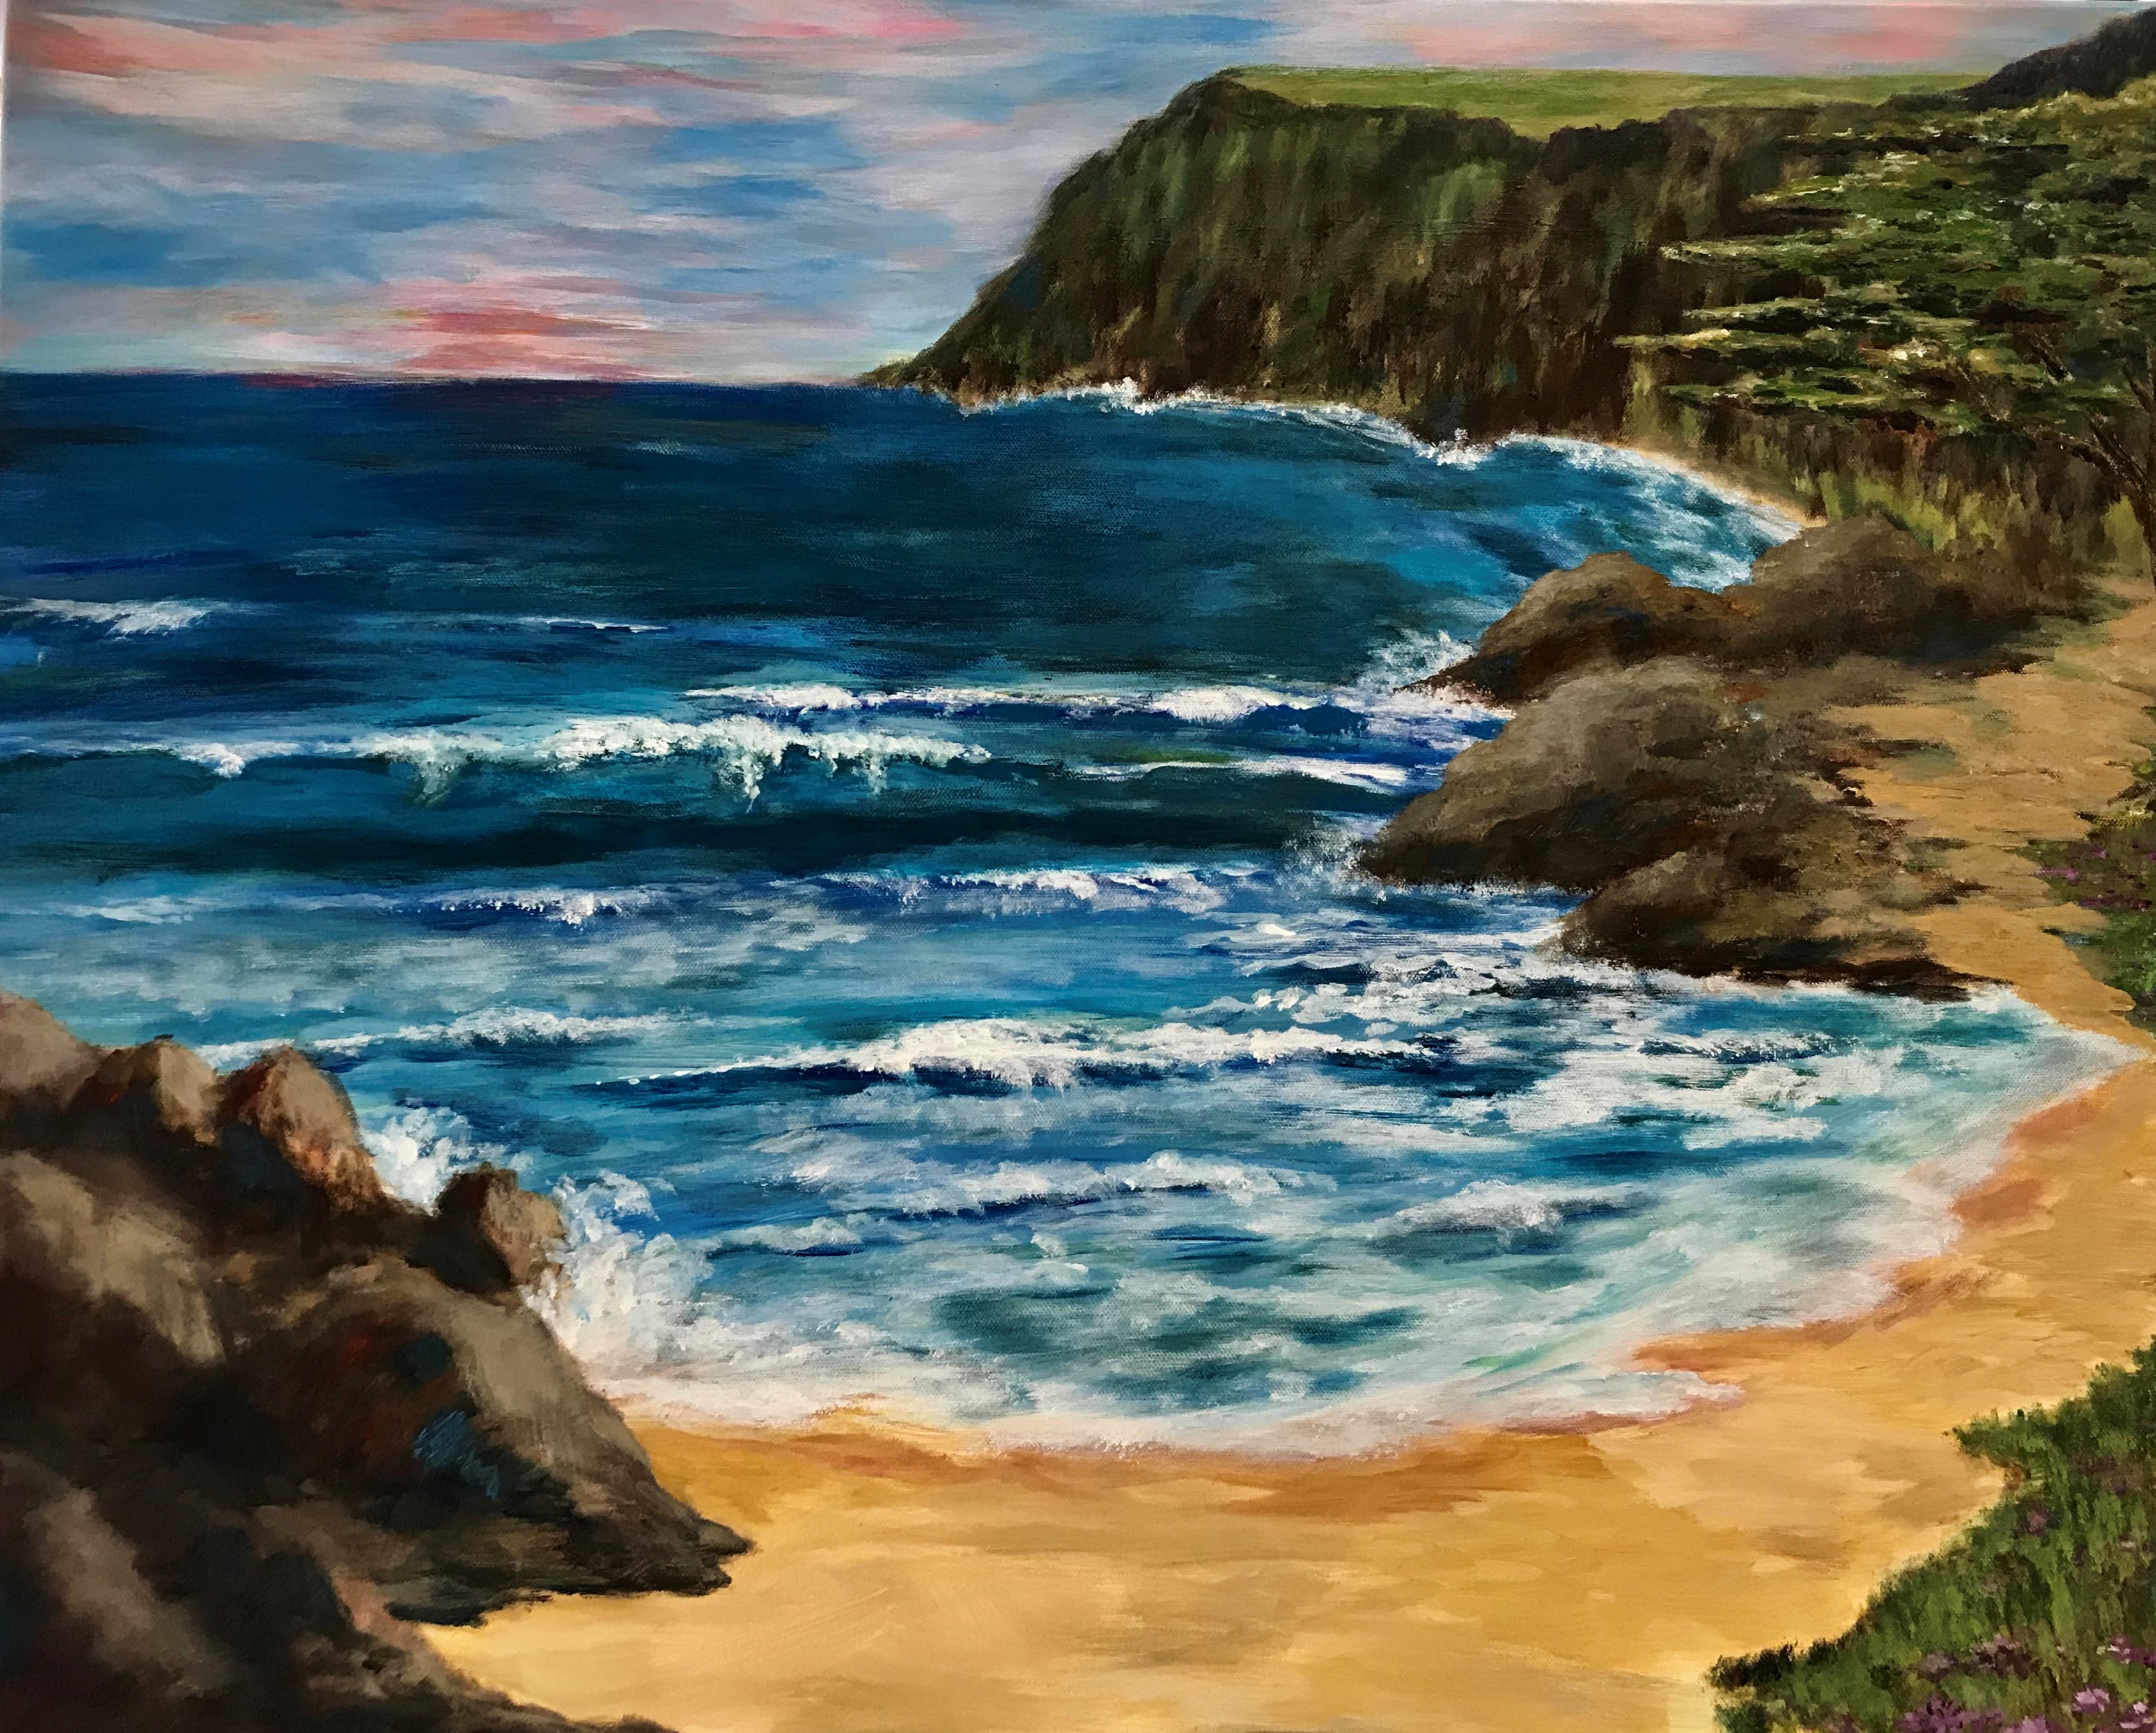 Seascape Painting Techniques Workshop